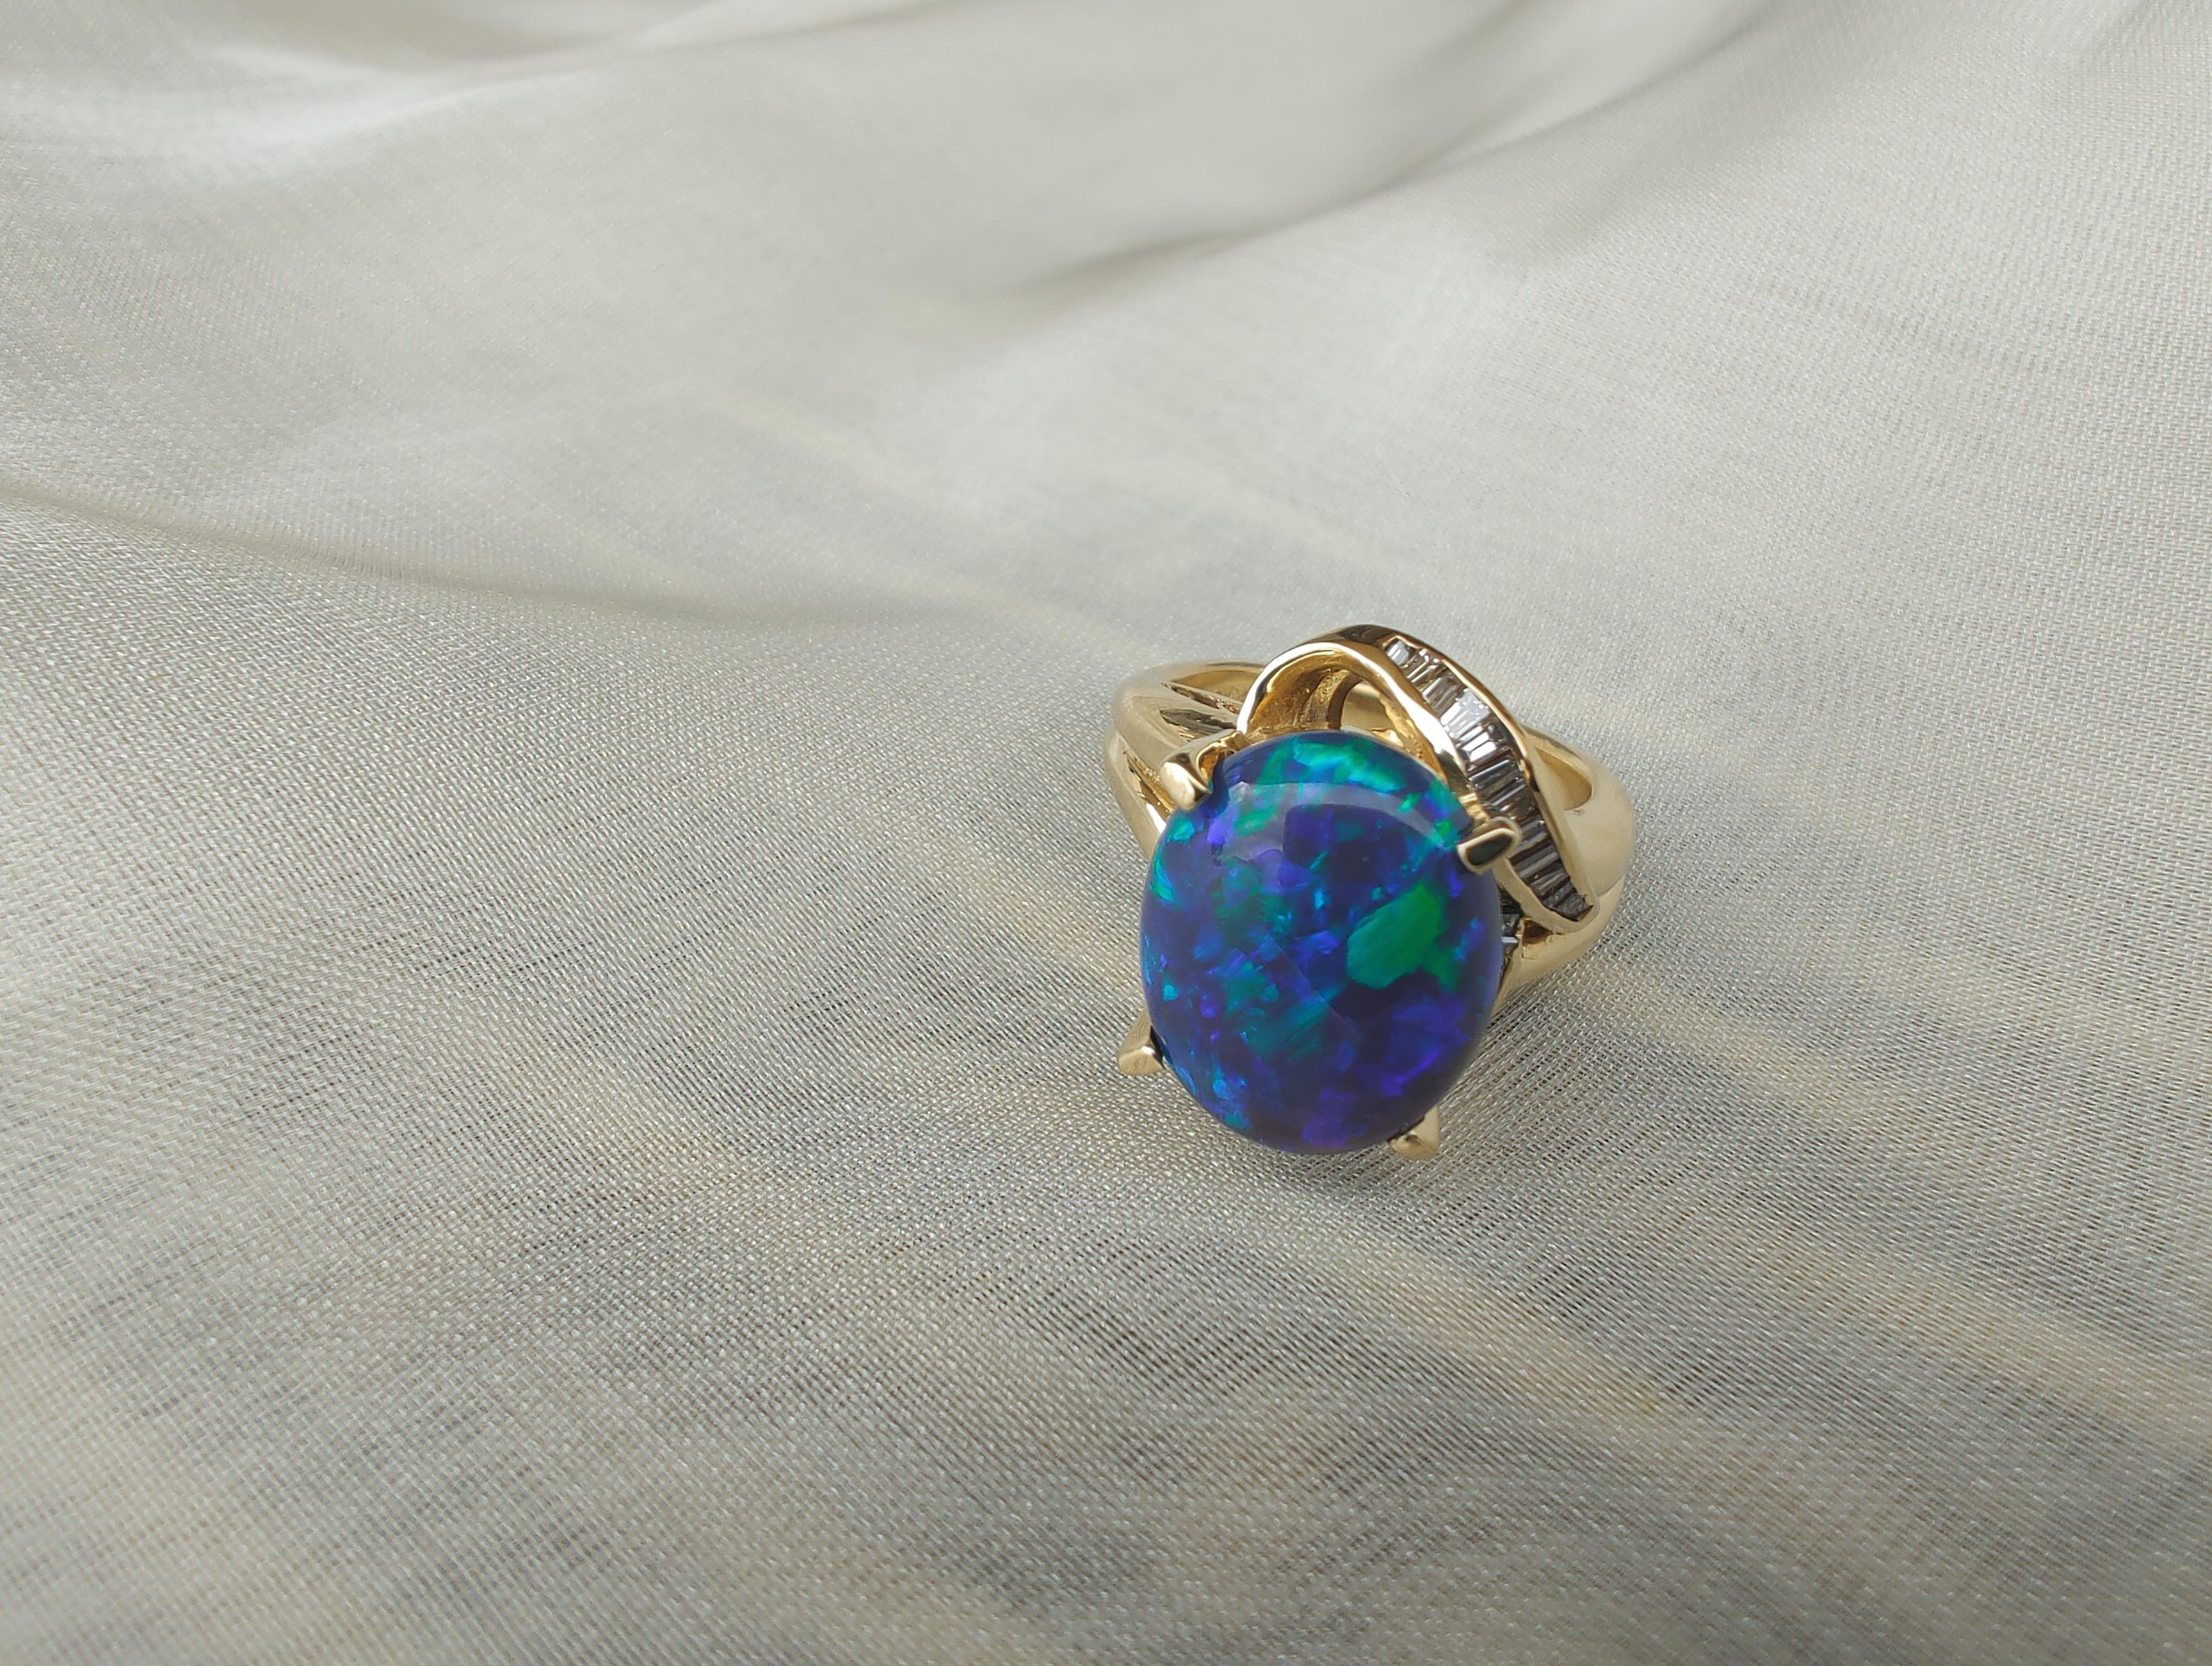 Australischer massiver schwarzer Opal (10,8 x 13,1 mm) in Edelsteinqualität und spitz zulaufender Baguette-Diamantring in 18 Karat Gelbgold gefasst.
Der Schwarzopal wird oft als der 